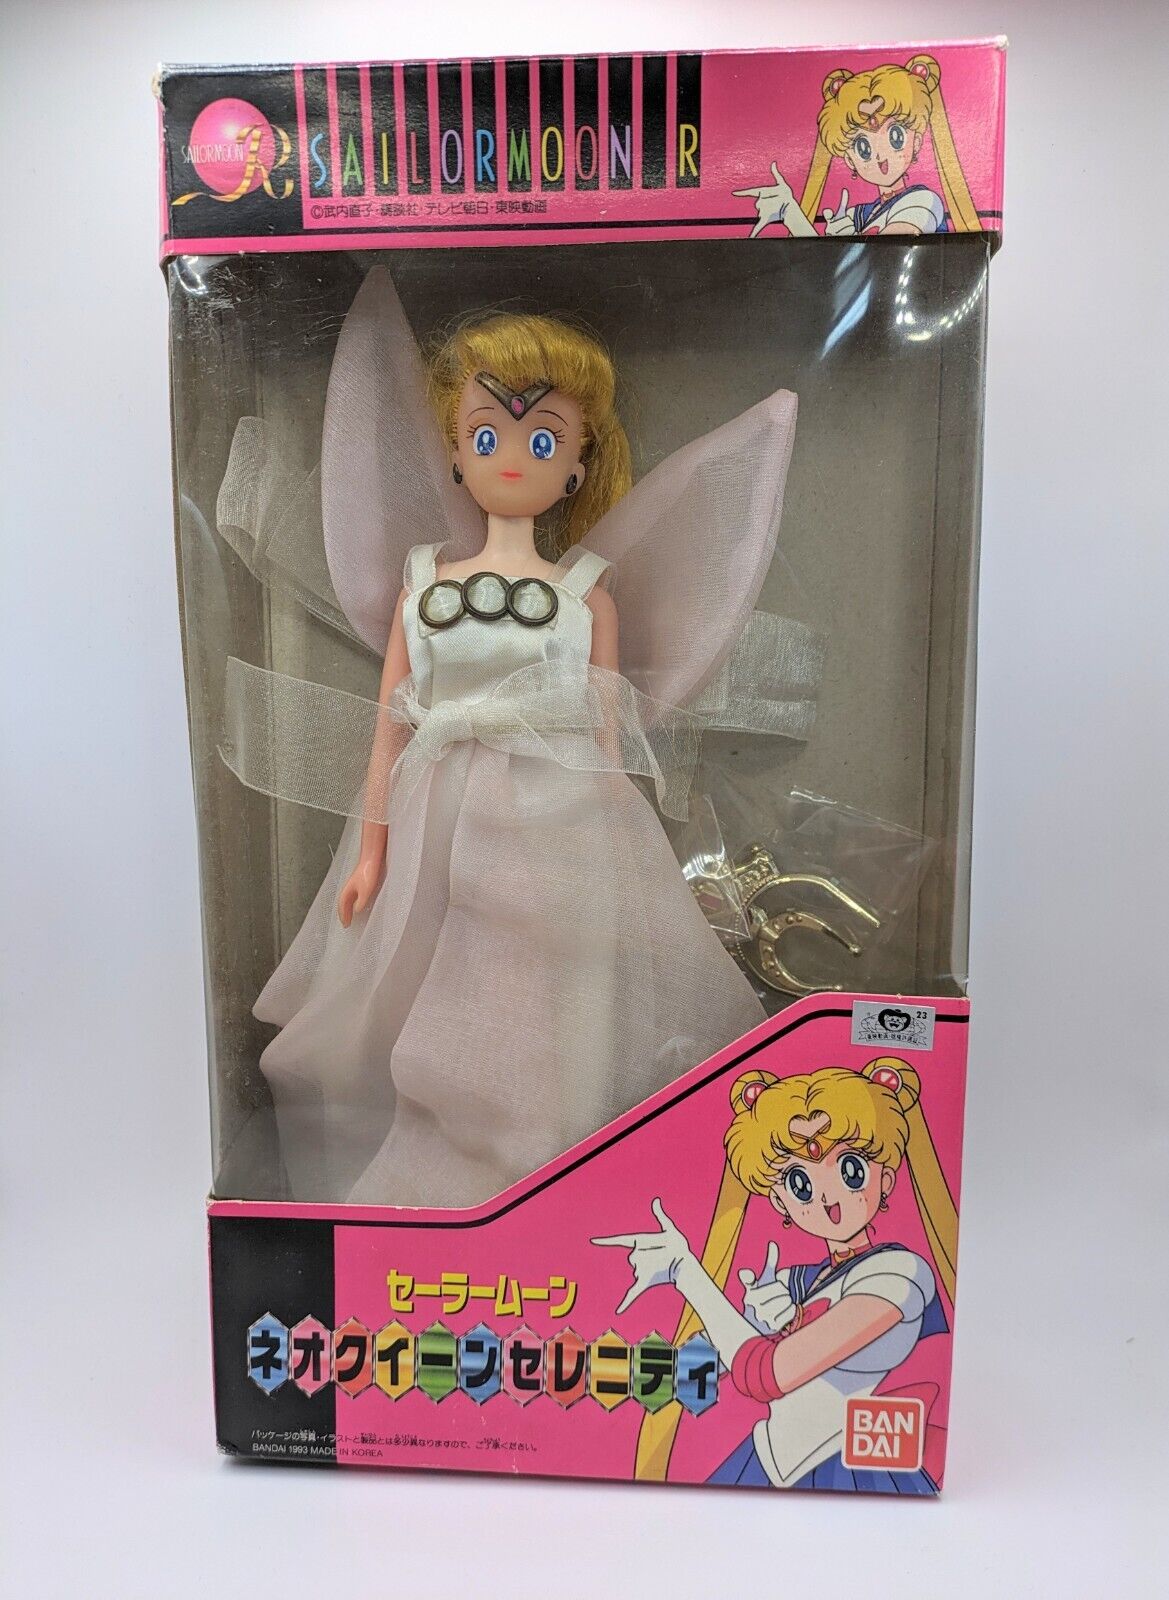 BANDAI Sailor Moon Princess Serenity Doll Used Japan Vintage 